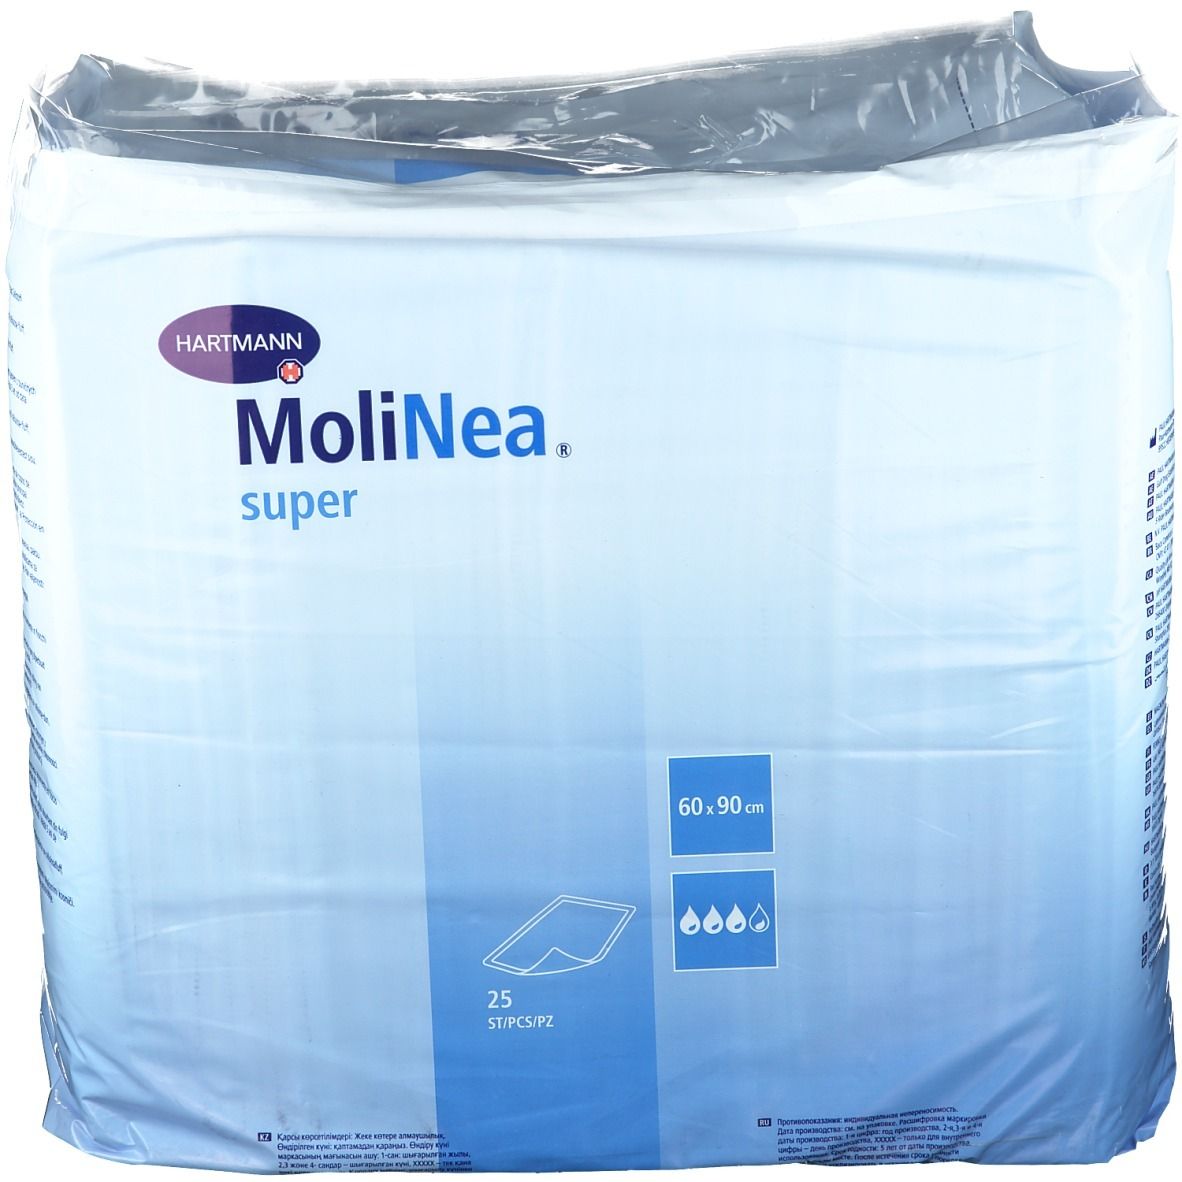 MoliNea® Krankenunterlage 60 x 90 cm